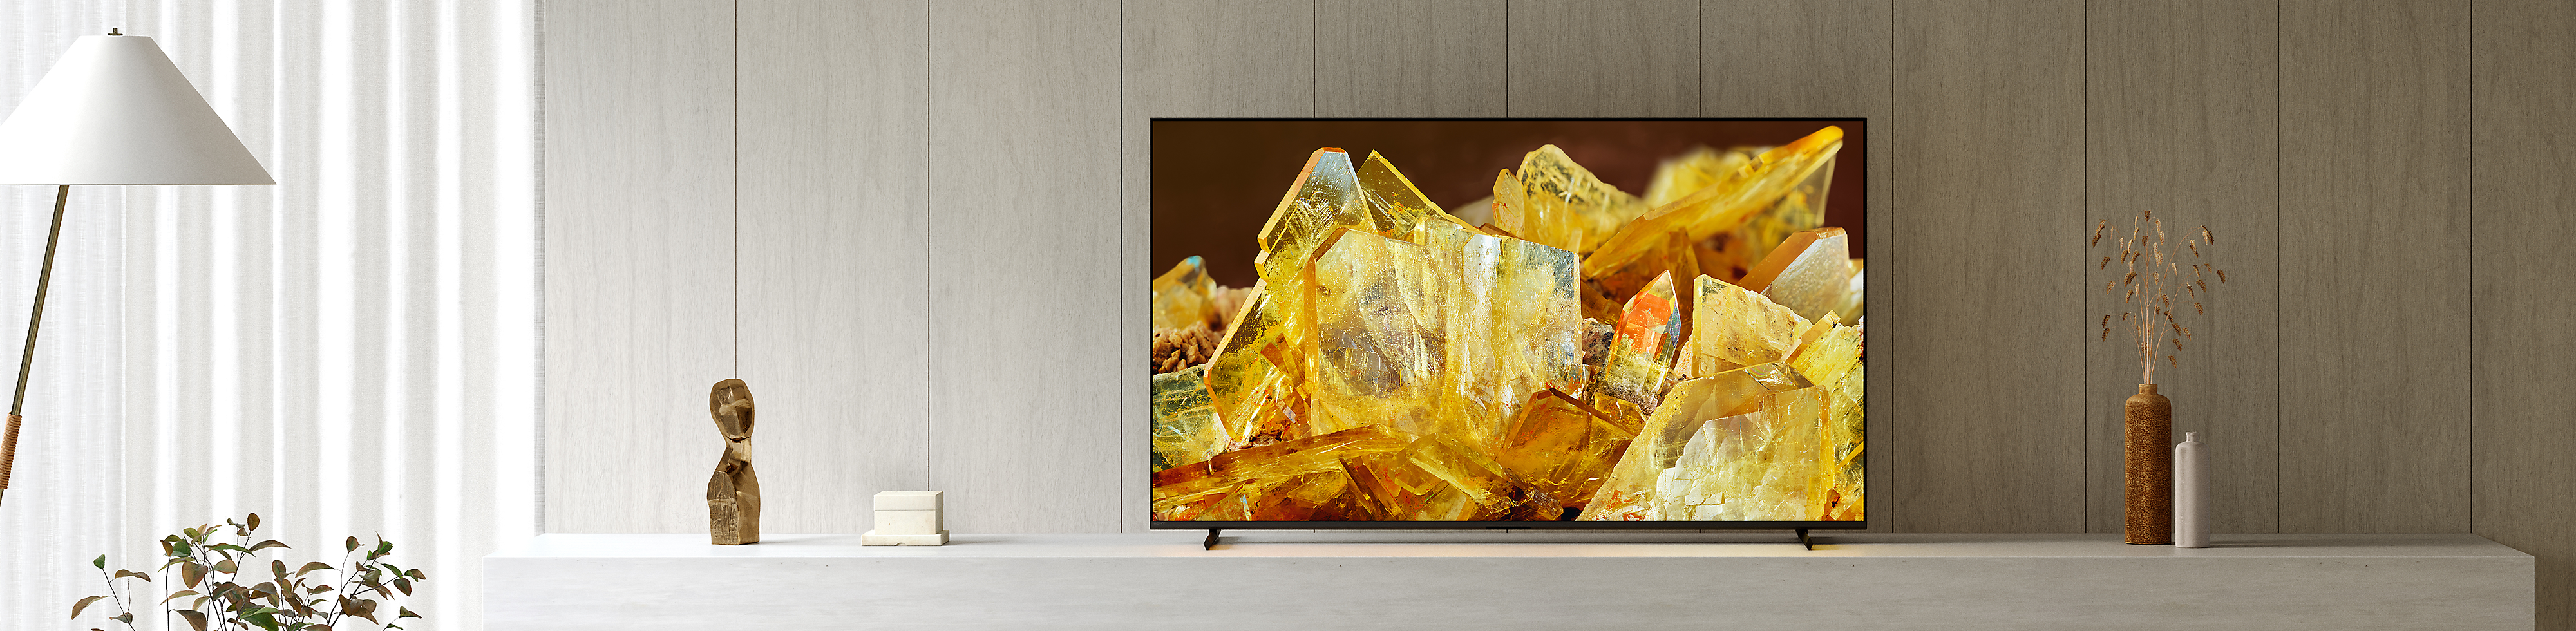 Télé BRAVIA XR dans un salon, affichant un gros plan de cristaux de couleur ambre